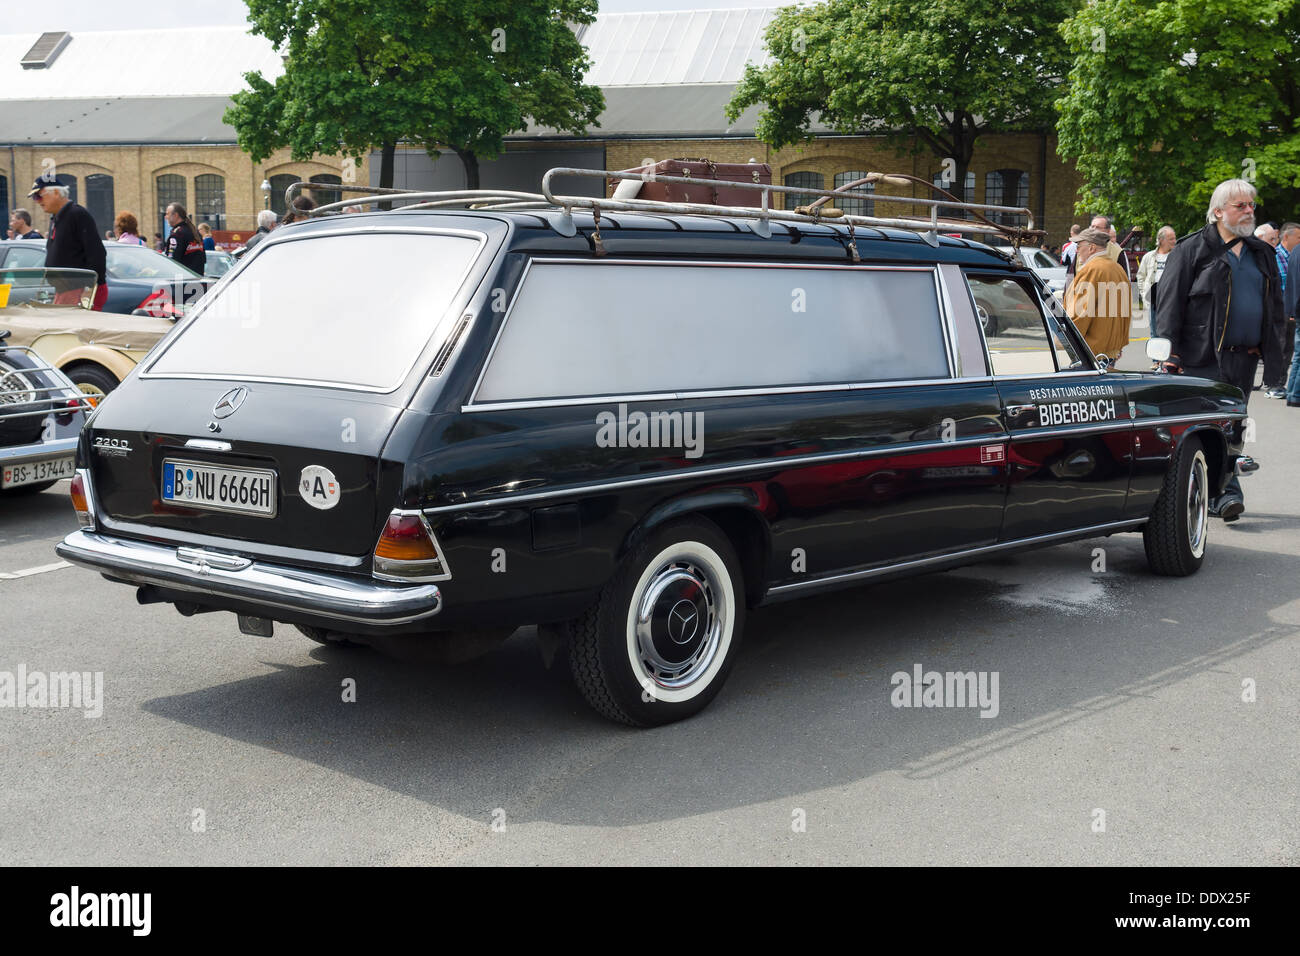 Mercedes carro funebre immagini e fotografie stock ad alta risoluzione -  Alamy